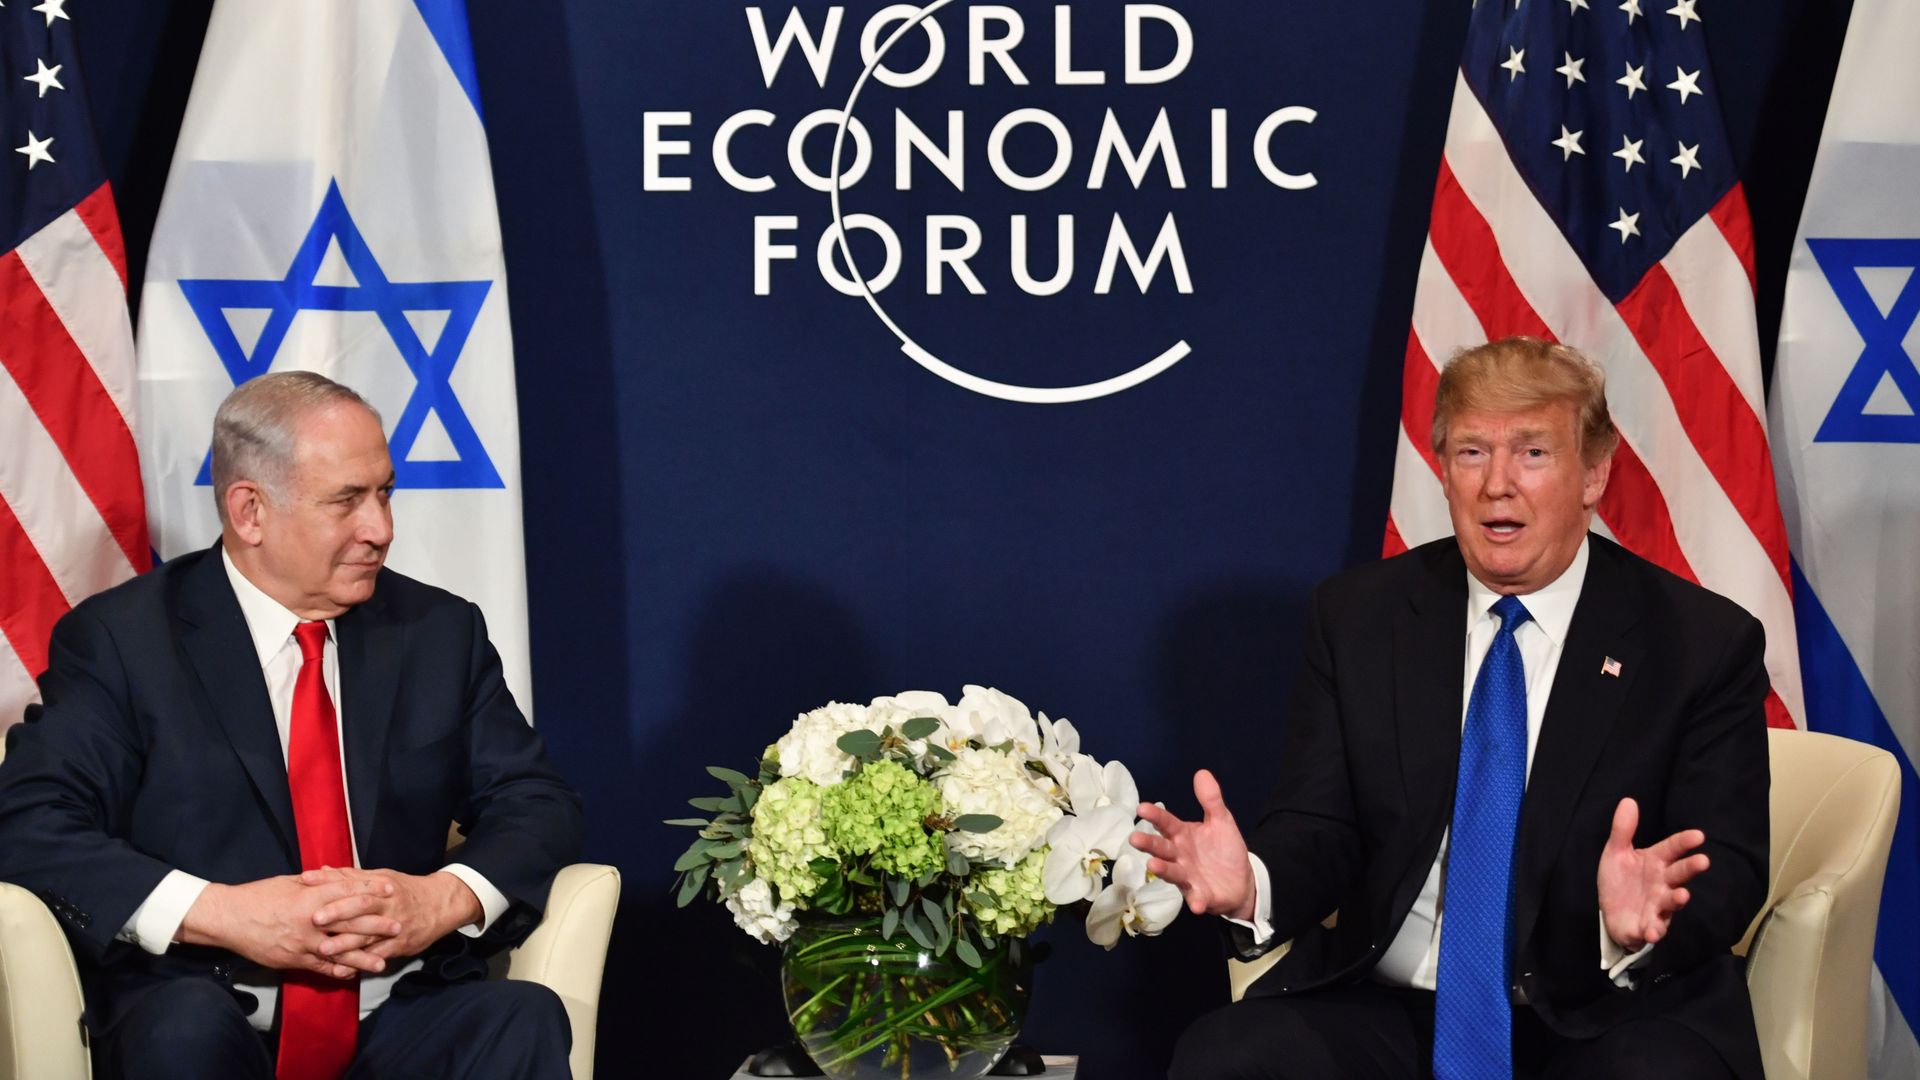 Trump and Netanyahu talk at Davos